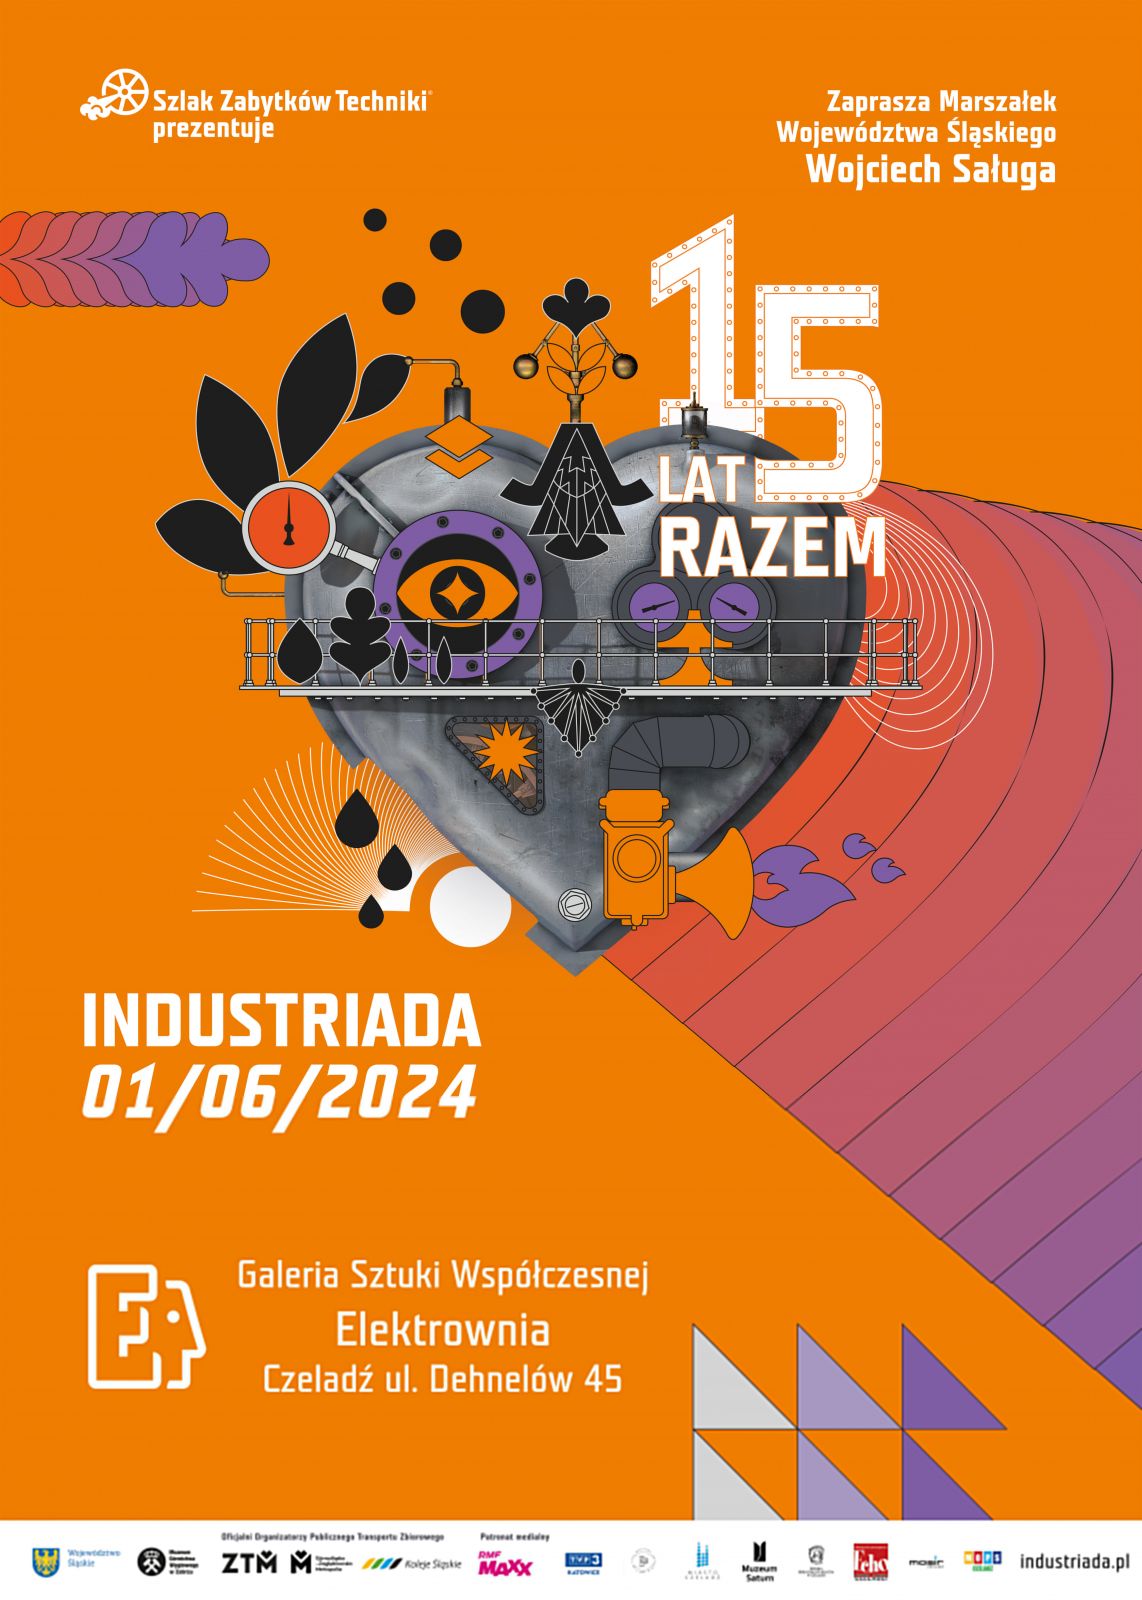 Plakat promujący Industriadę 2024